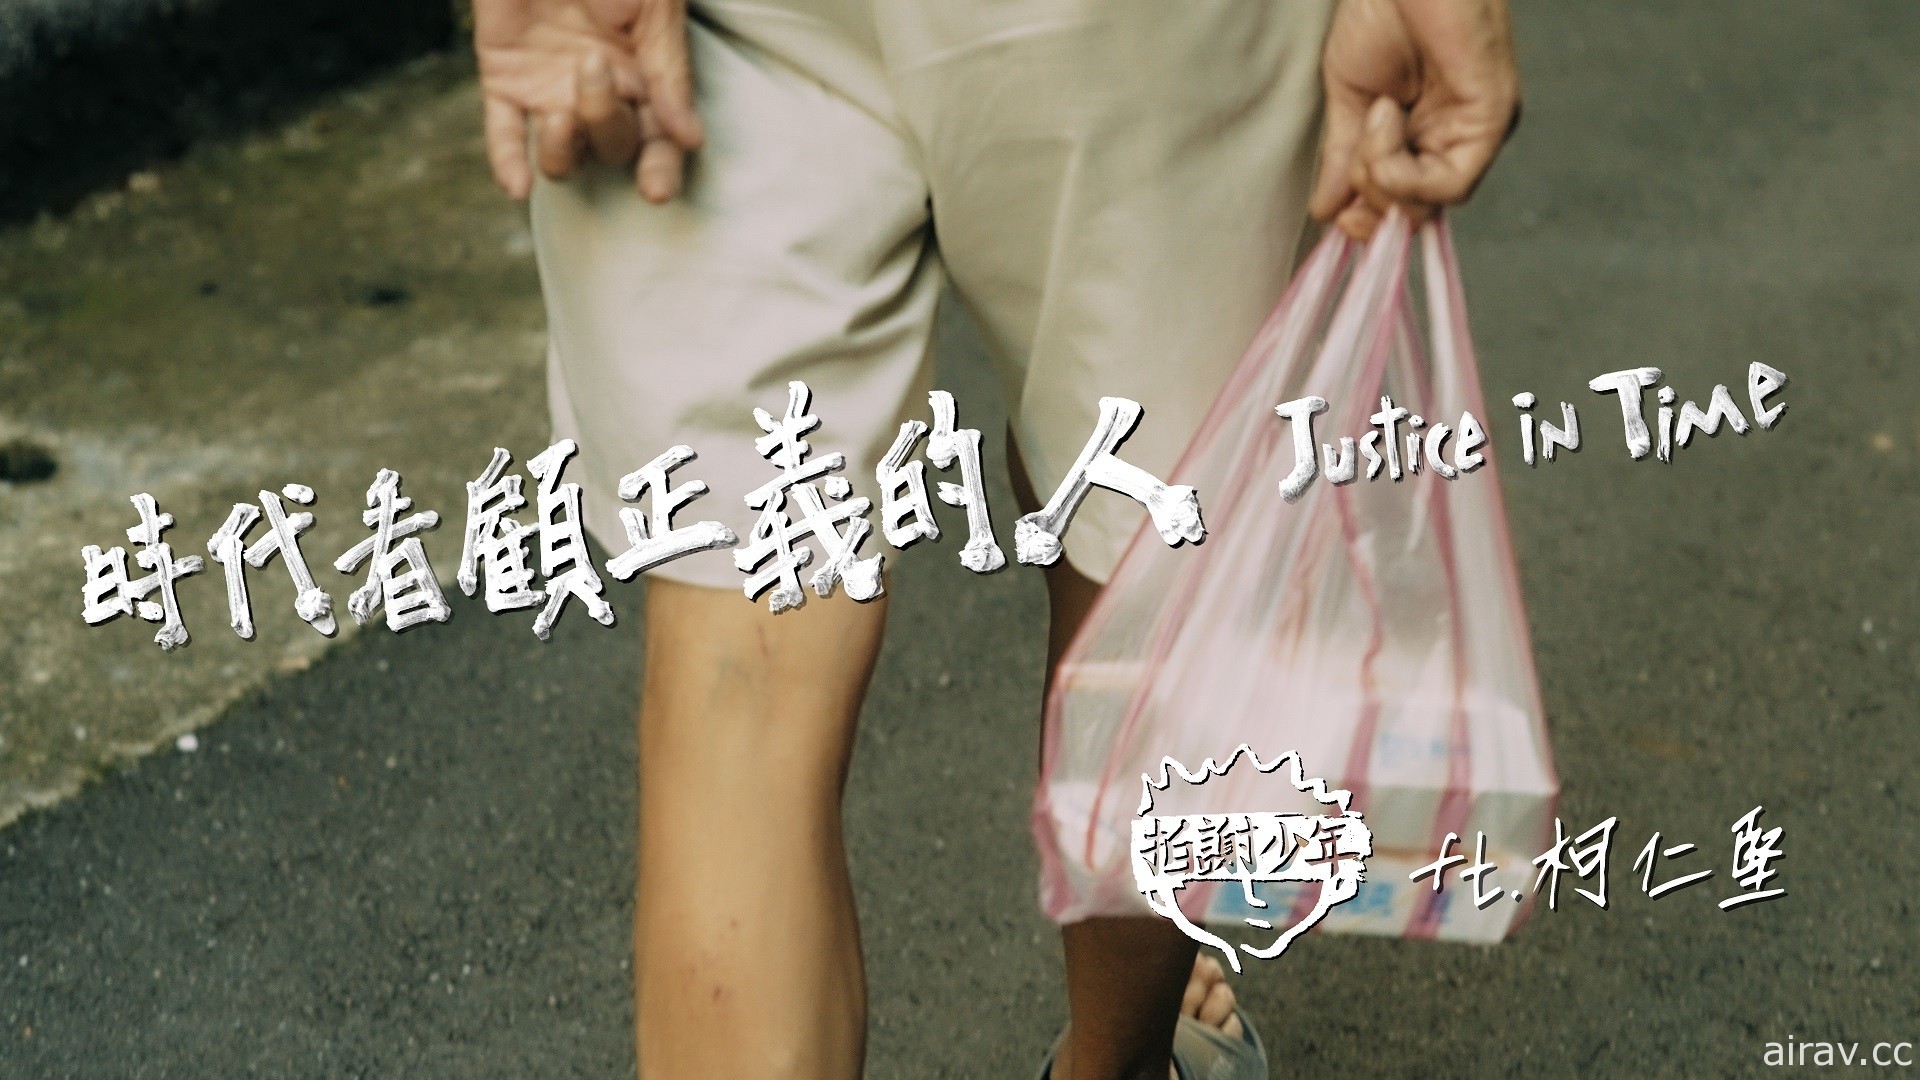 台湾漫画《来自清水的孩子》最终回上市 拍谢少年汲灵感发布“时代看顾正义的人”MV